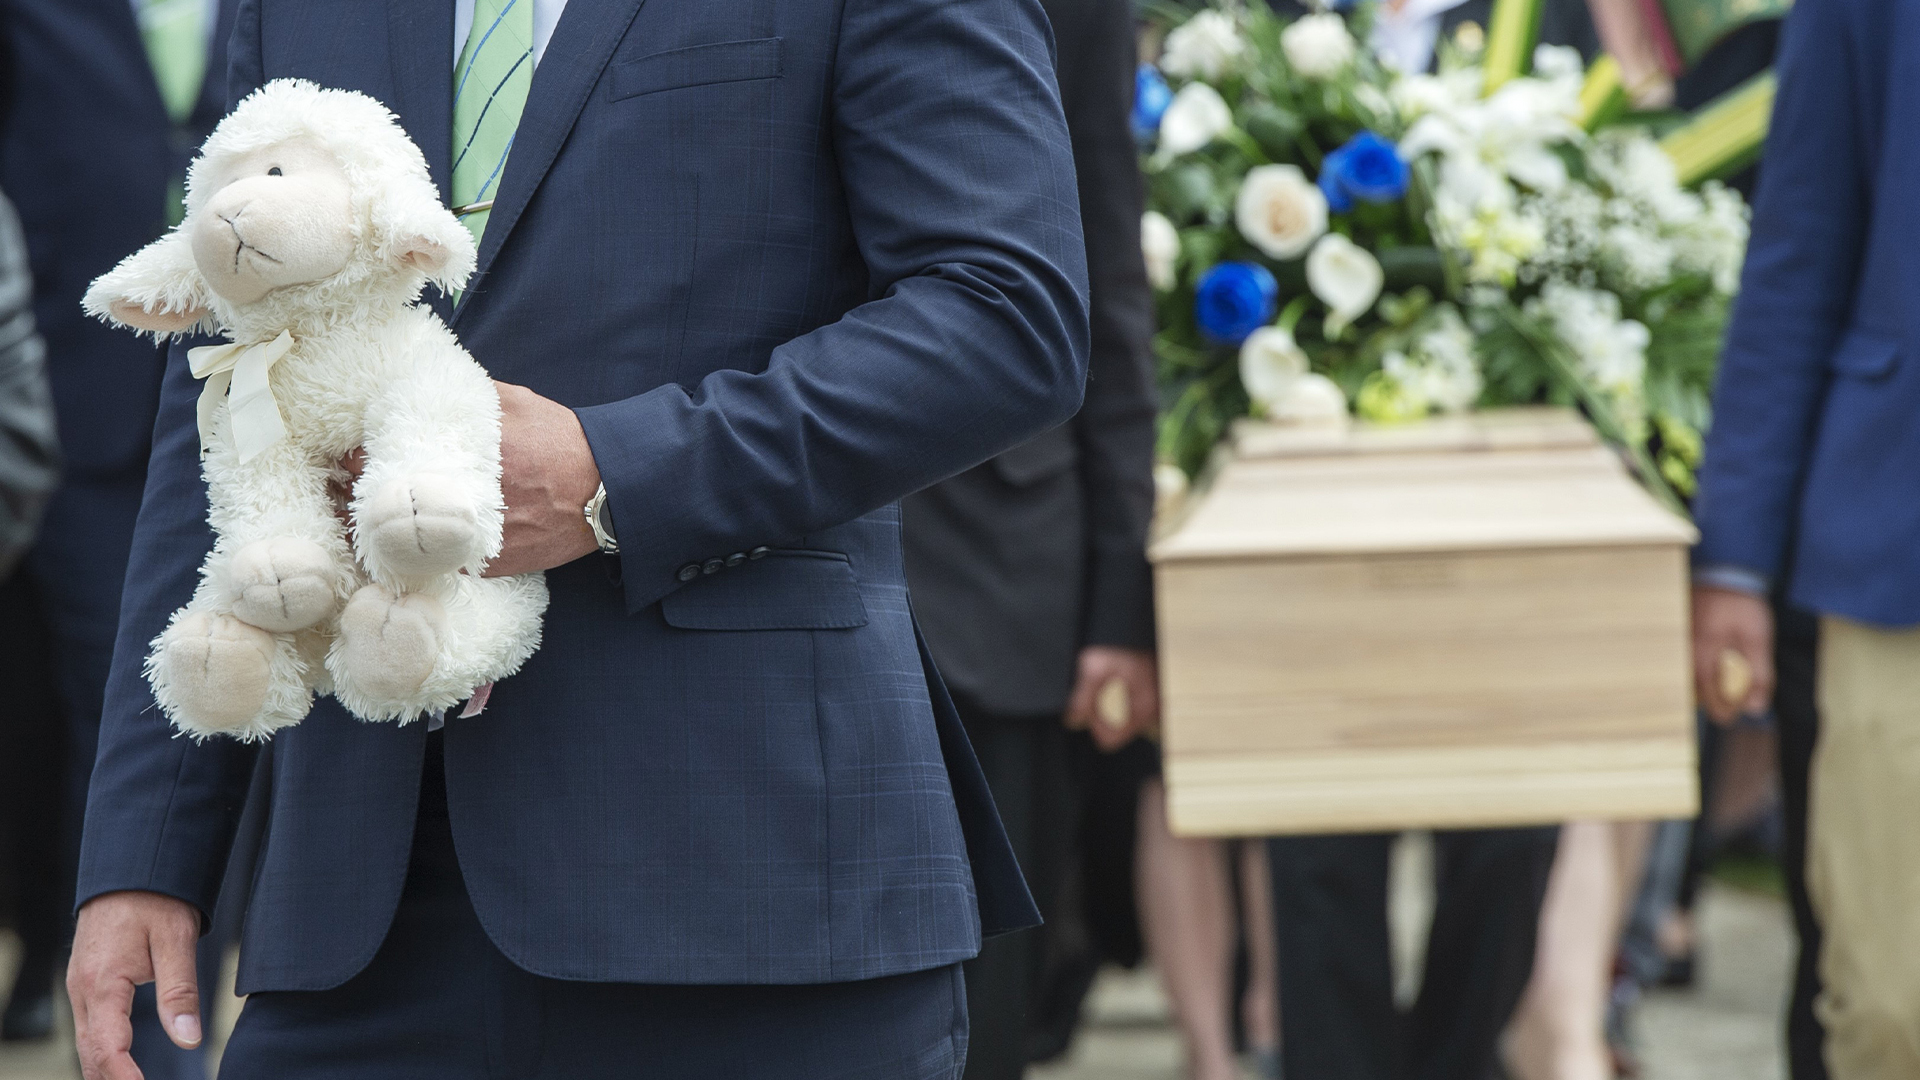 Un homme tient une peluche à proximité du cercueil de la fillette martyre de Granby, lors des funérailles de celle-ci en mai 2019.